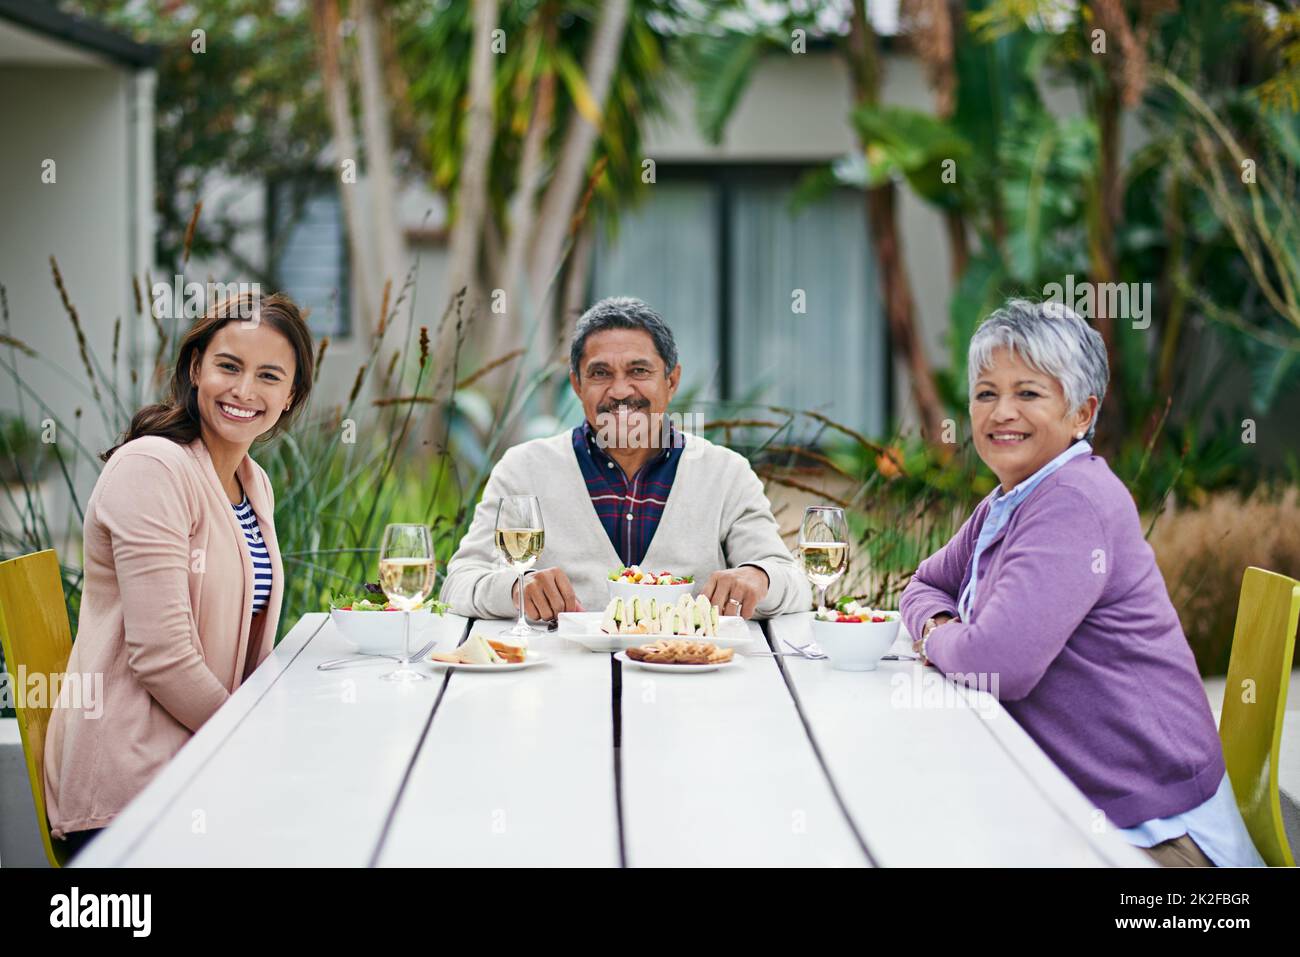 Zusammen ist ihr Lieblingsort. Beschnittenes Porträt einer Familie, die gemeinsam im Freien ein Mittagessen genießt. Stockfoto